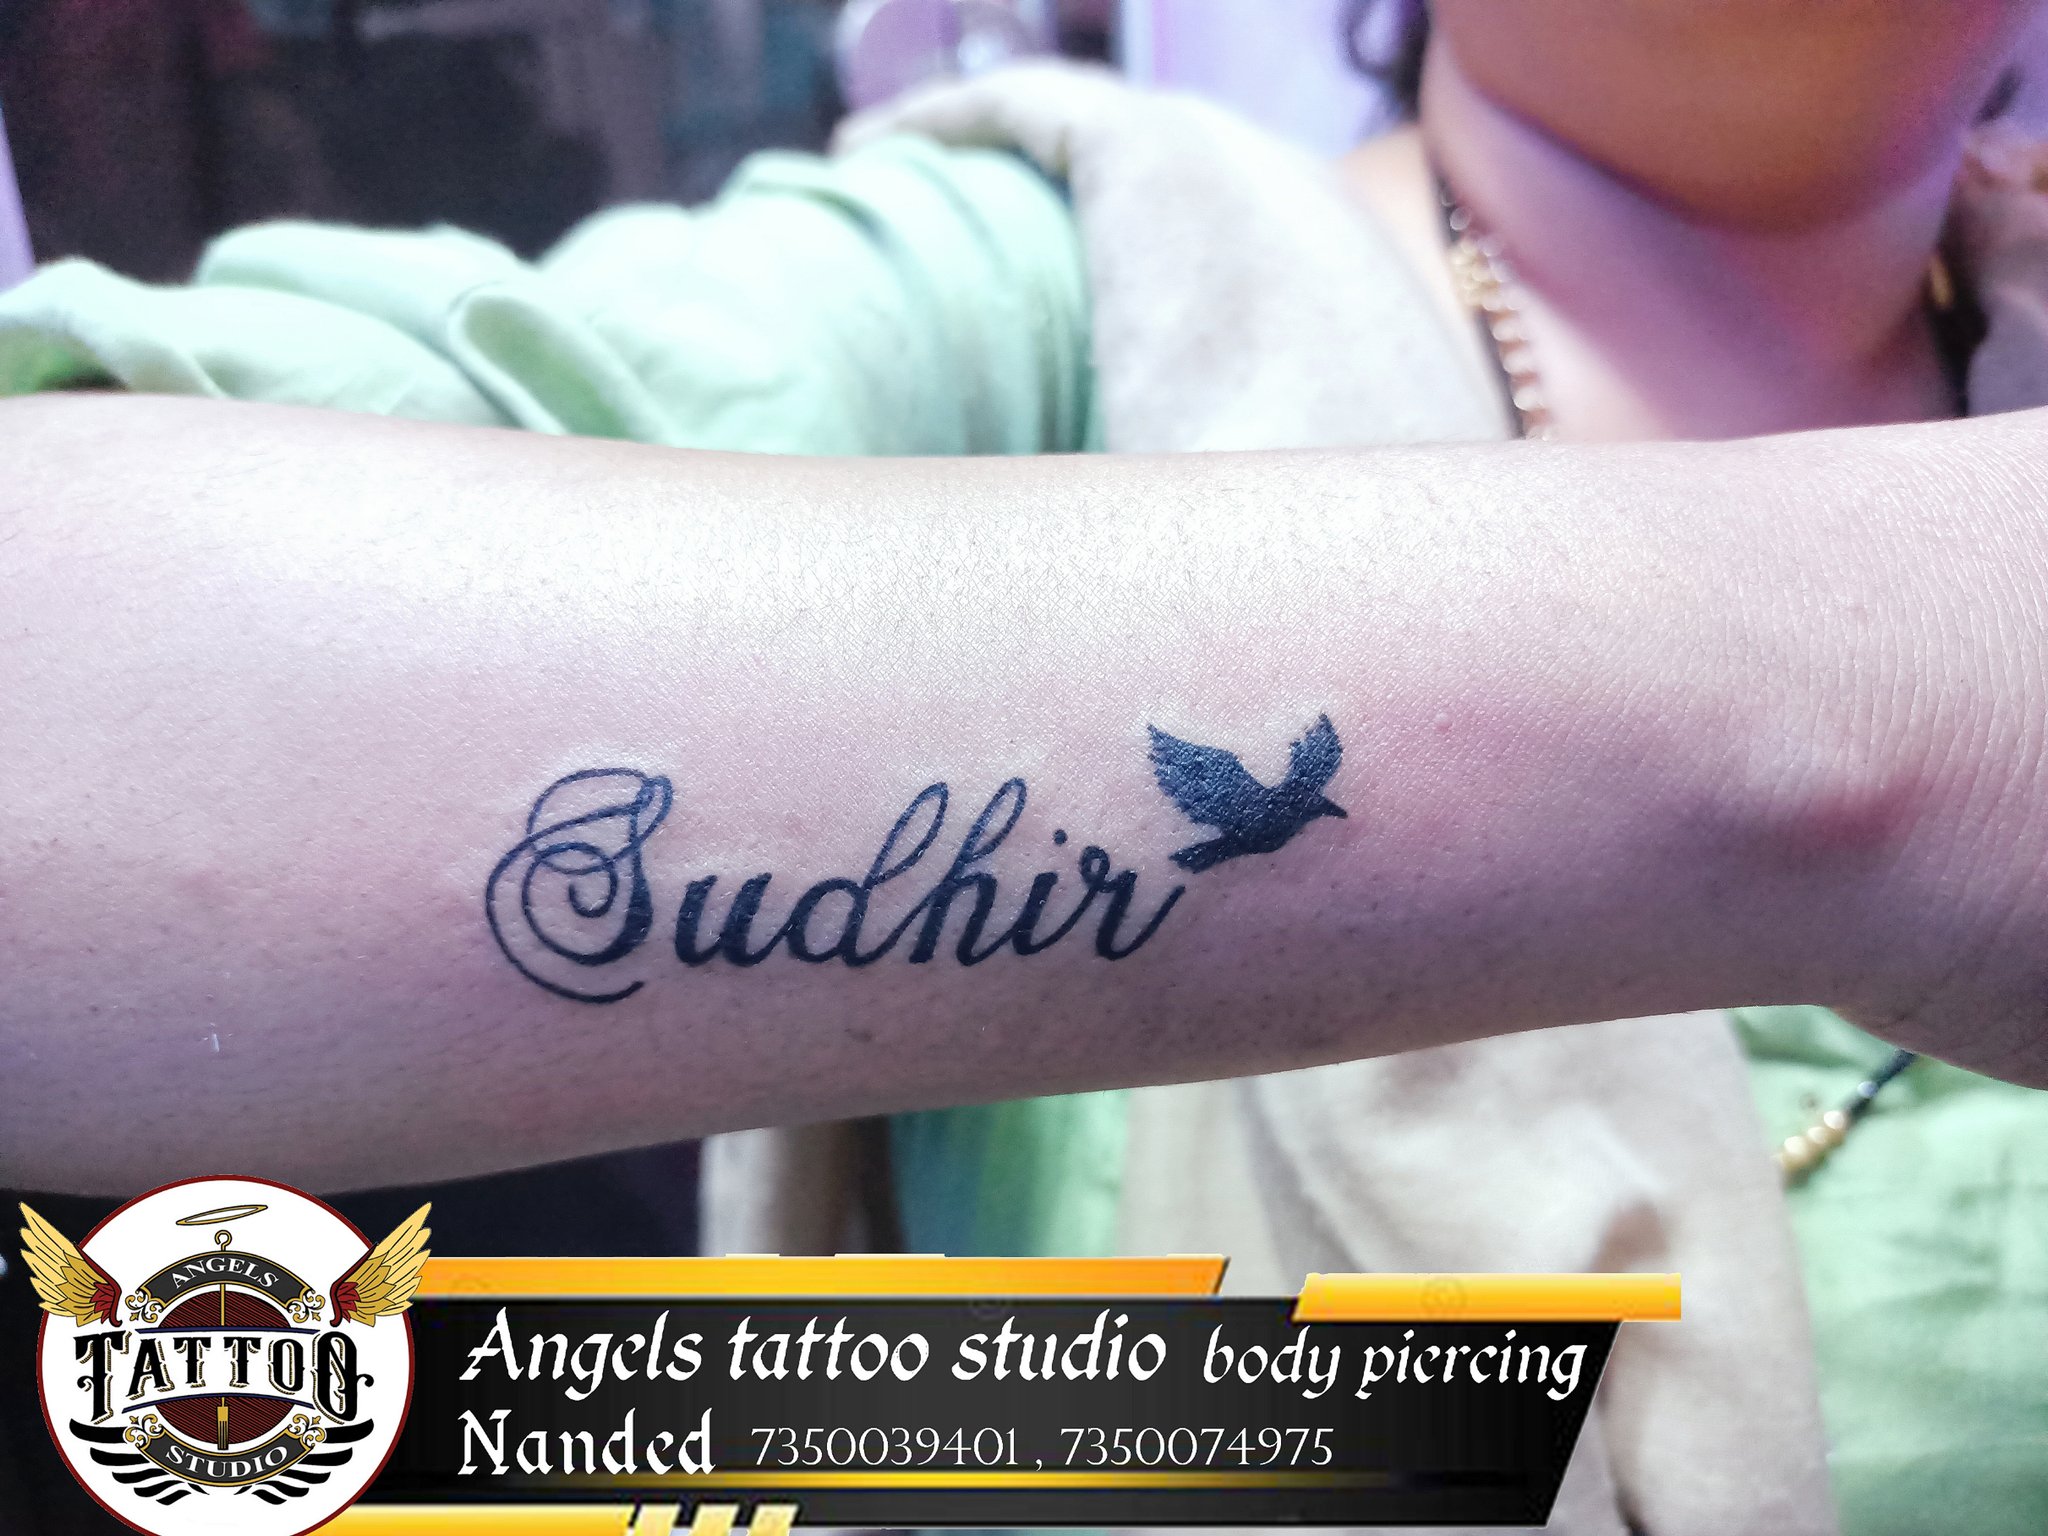 nirjala p ghawat on Twitter tattoo nametattoo nandedcity  angelstattoostudionanded 887Ni NGhawat httpstco79GL8qjTlL  Twitter